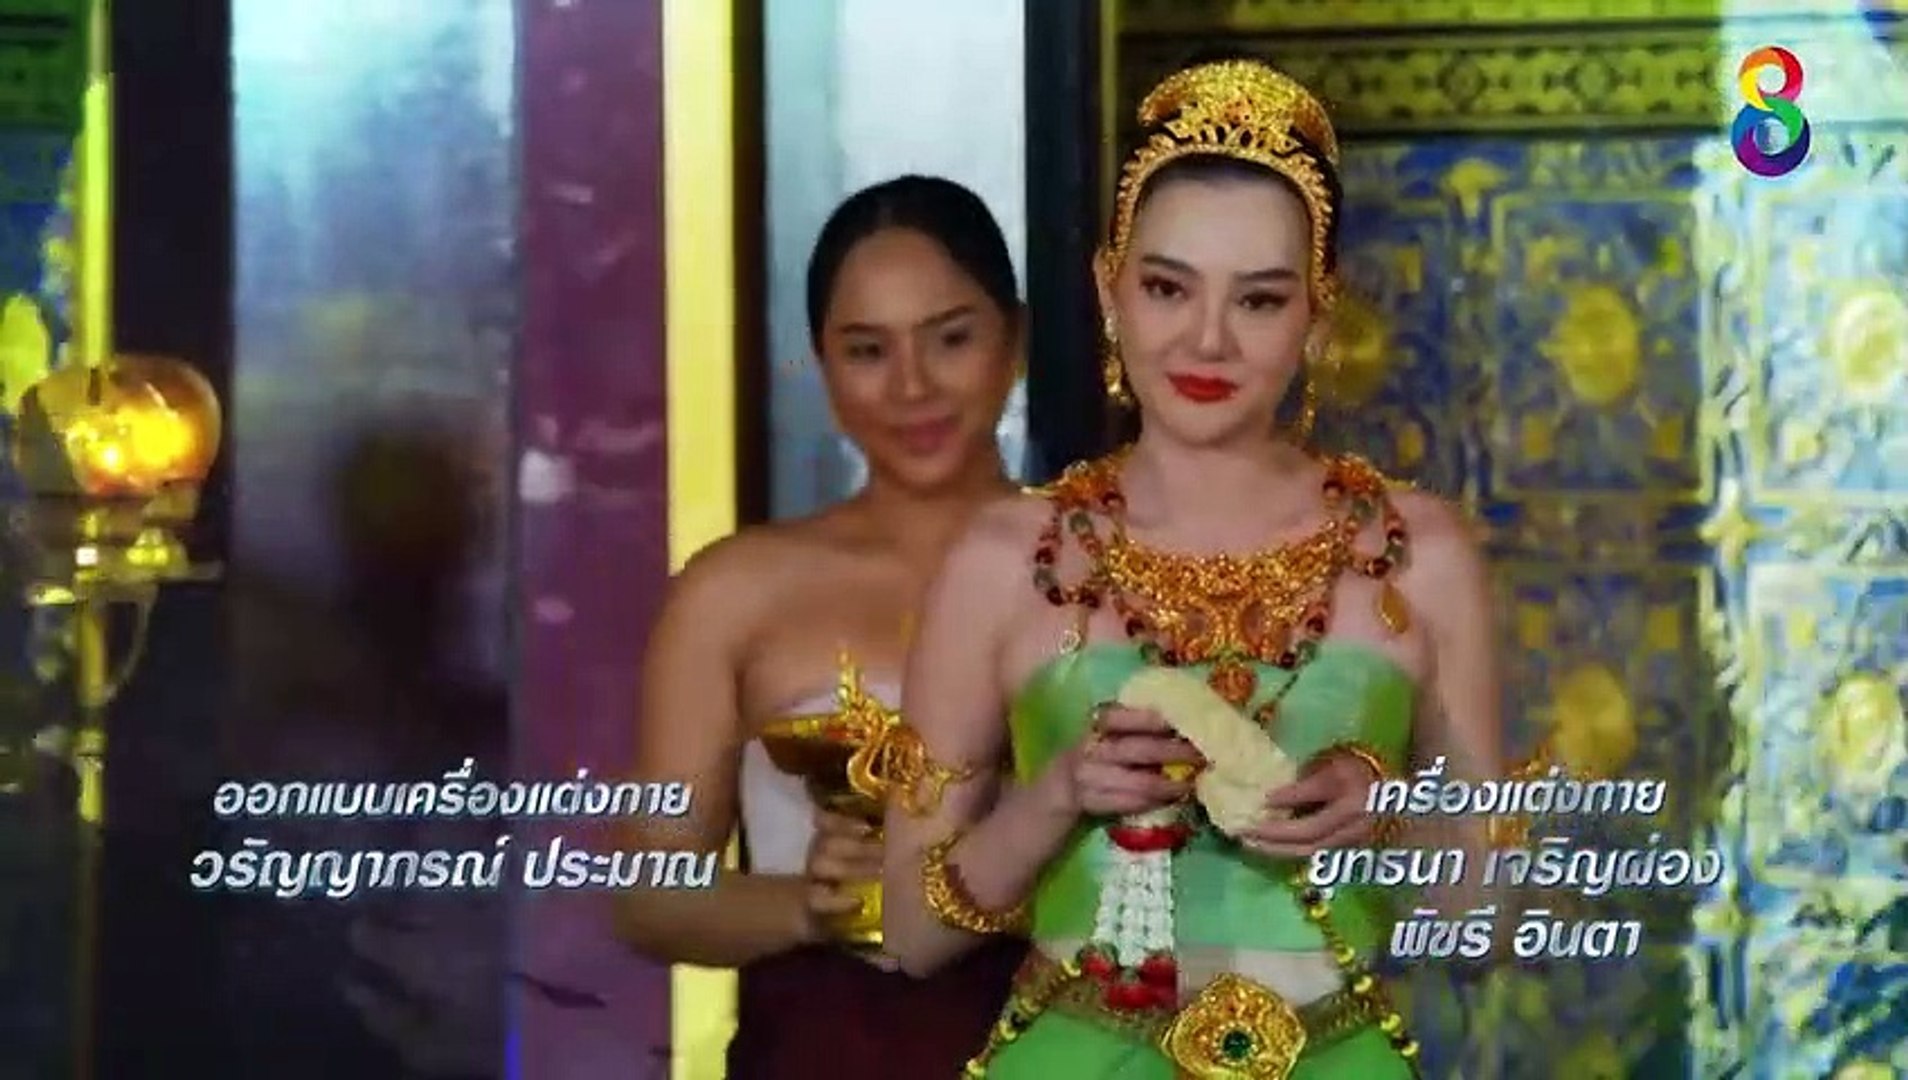 Phim Chuyện Tình Xà Nữ Tập 37 Việt Sub - Thuyết Minh  , Phim Thần Thoại , Tình Cảm Thái Lan